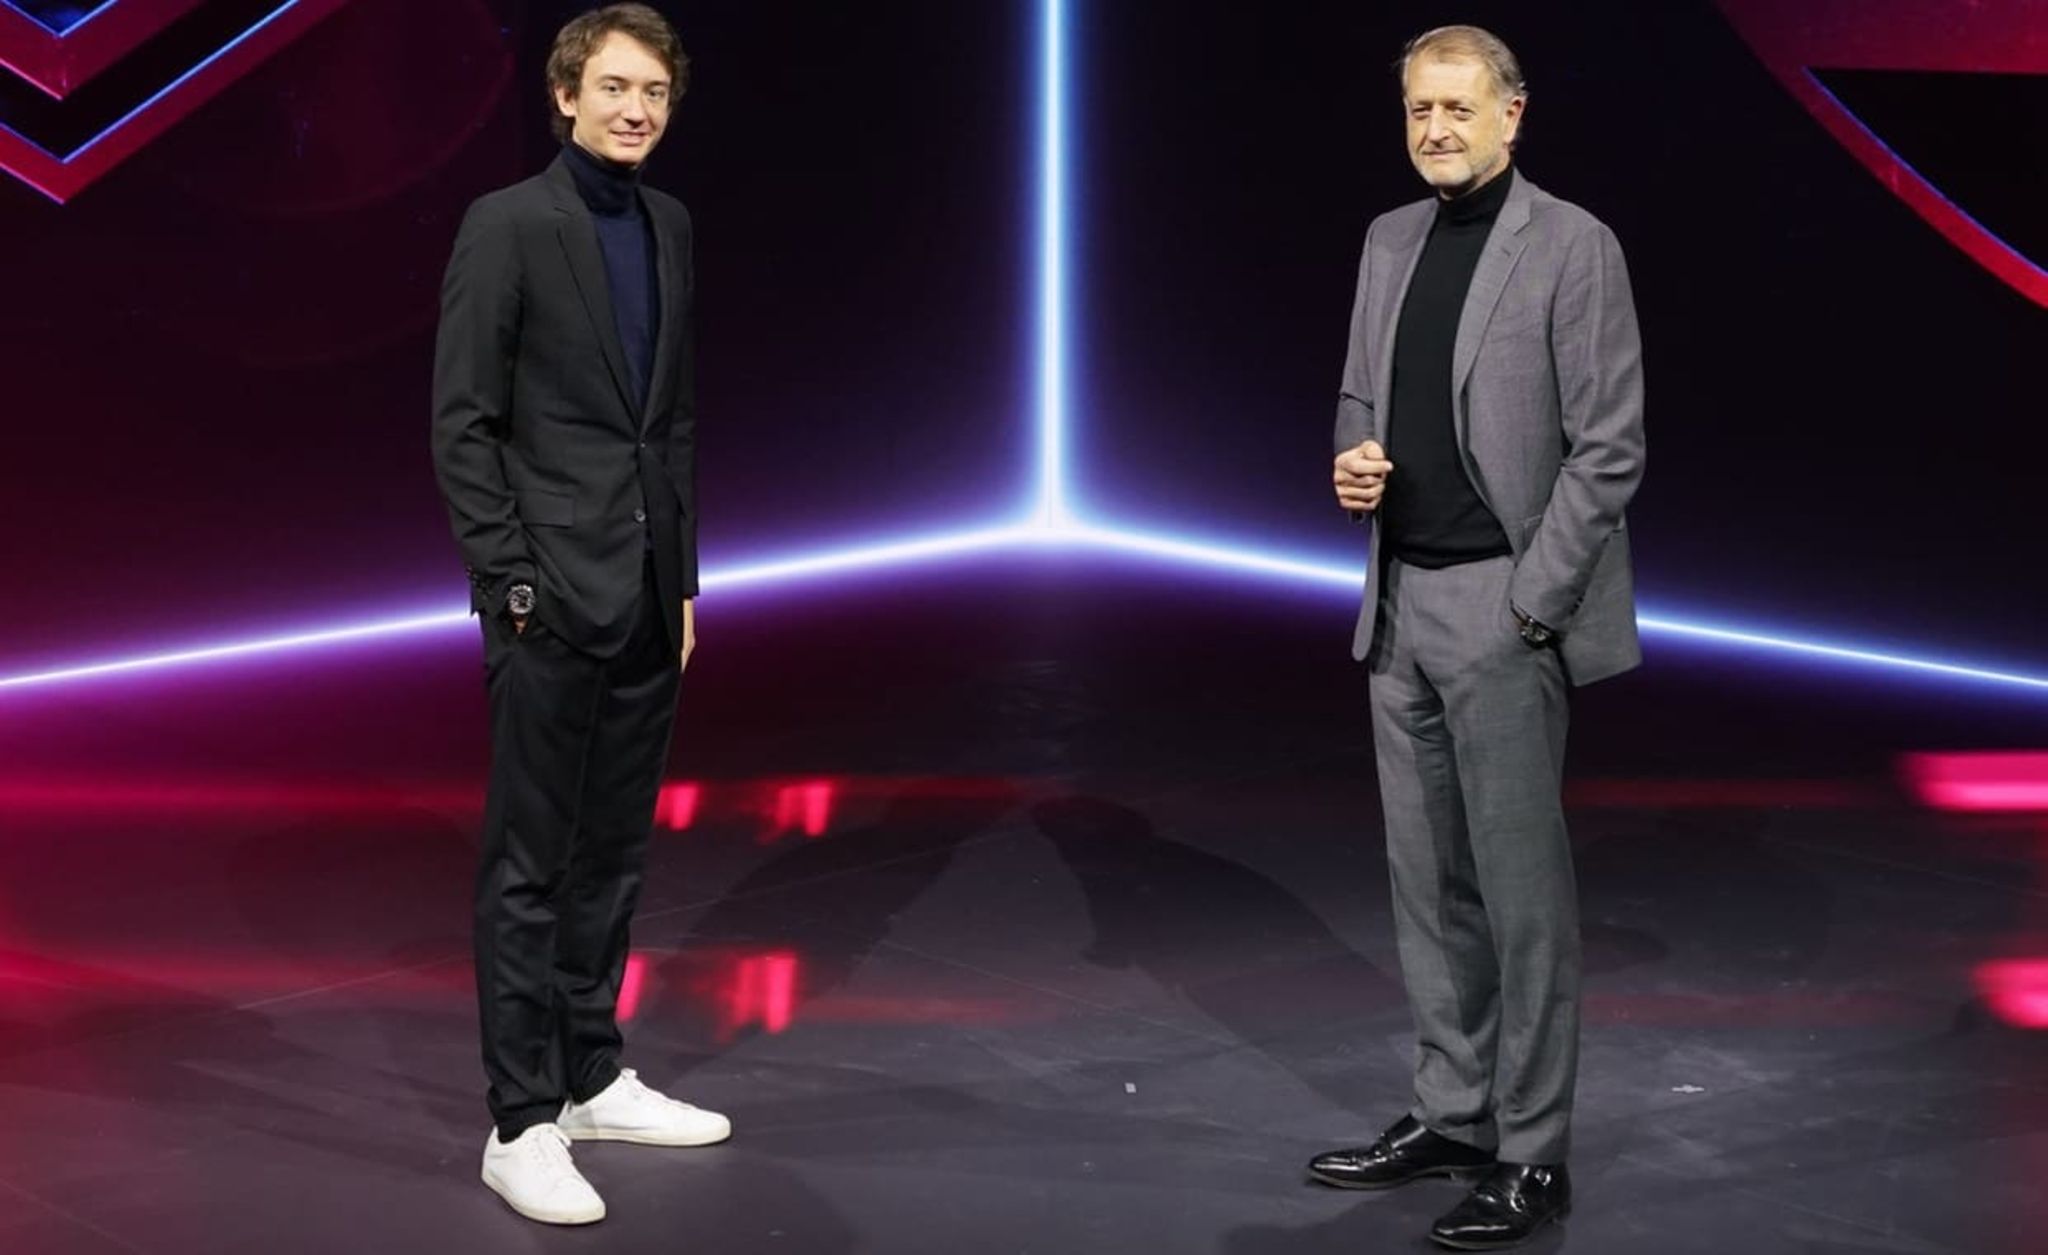 Bernard Arnaults jüngster Sohn nun bei Louis Vuitton